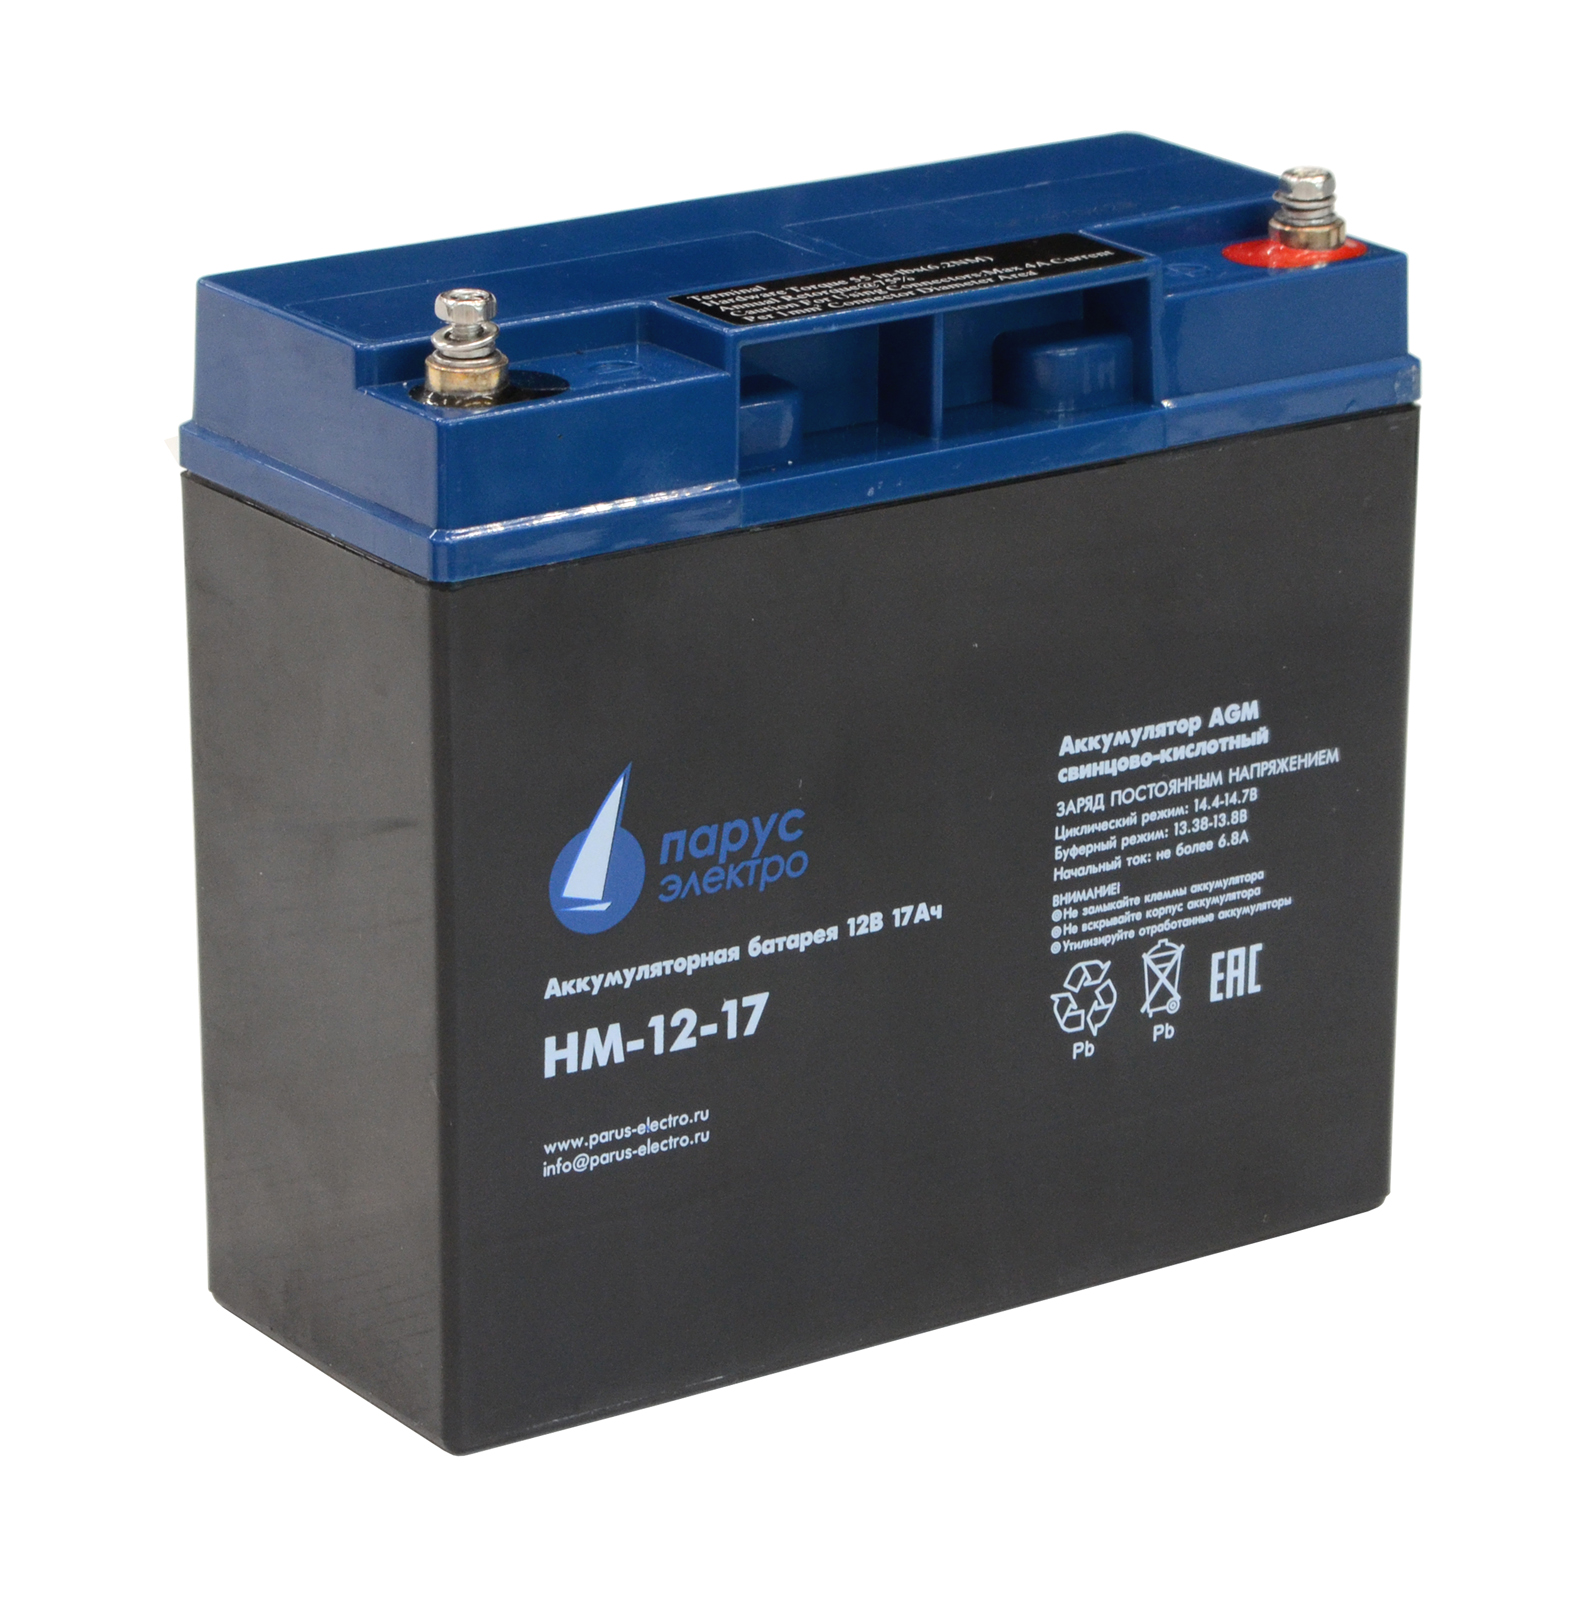 Аккумуляторная батарея для ИБП Парус электро HM-12-17, 12V, 17Ah (HM-12-17)